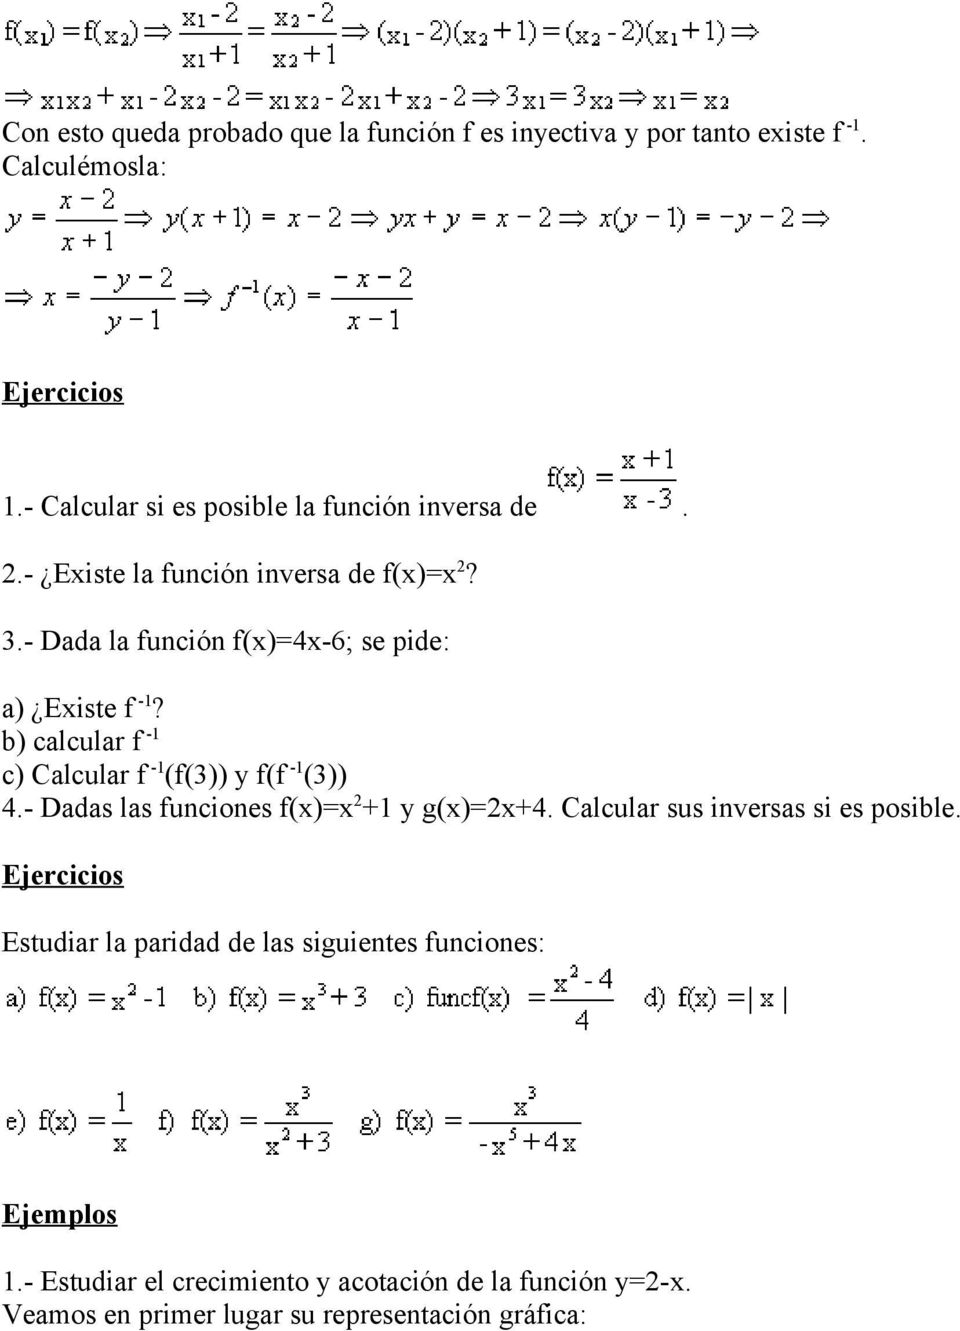 b) calcular f - c) Calcular f - (f(3)) y f(f - (3)) 4.- Dadas las funciones f() + y g()+4. Calcular sus inversas si es posible.